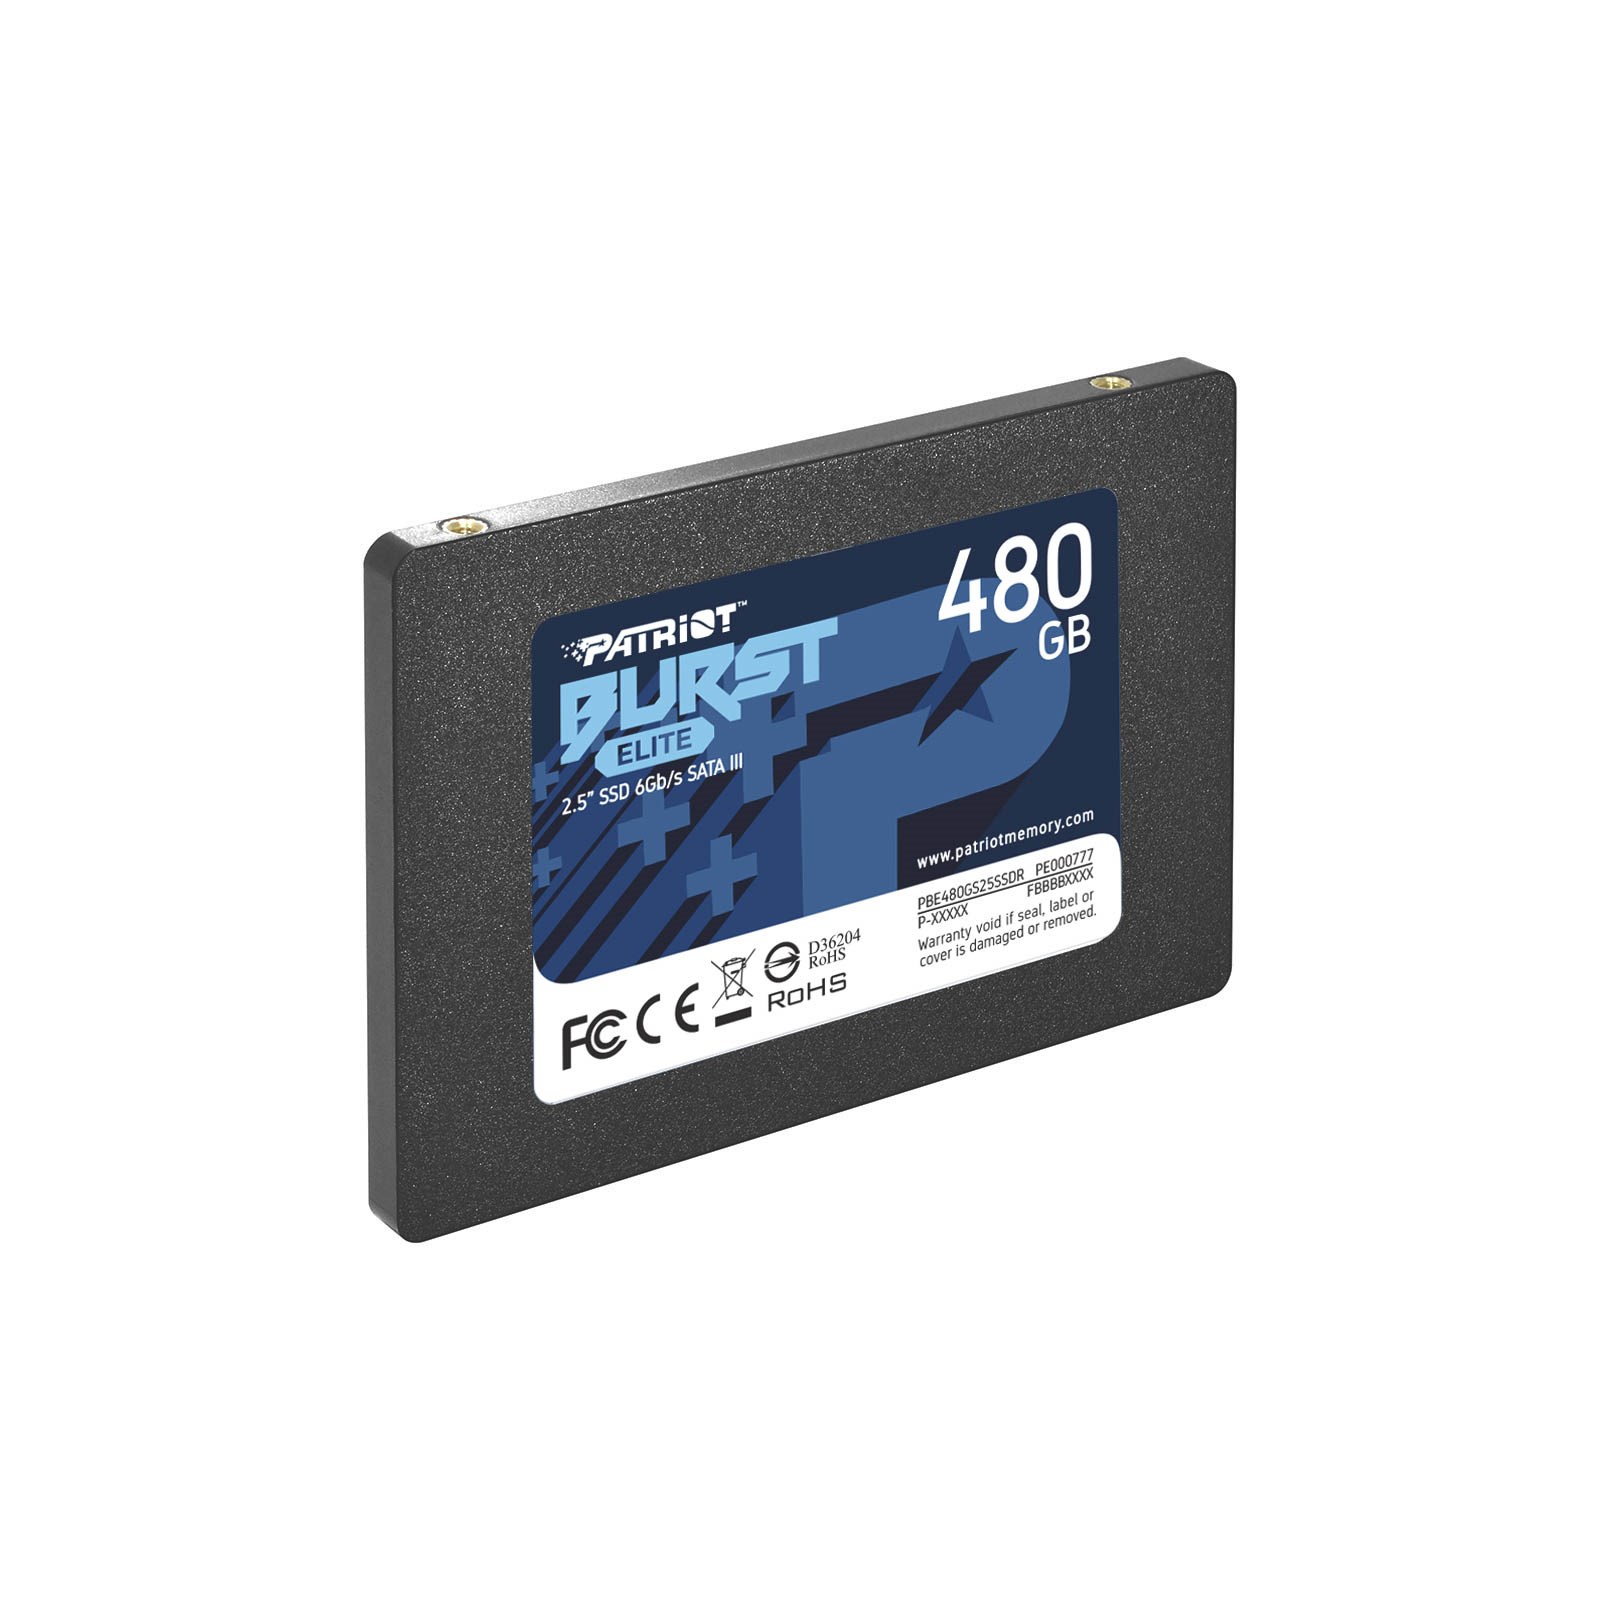  Patriot Memory Burst Elite SATA 3 240GB SSD 2.5 Inch